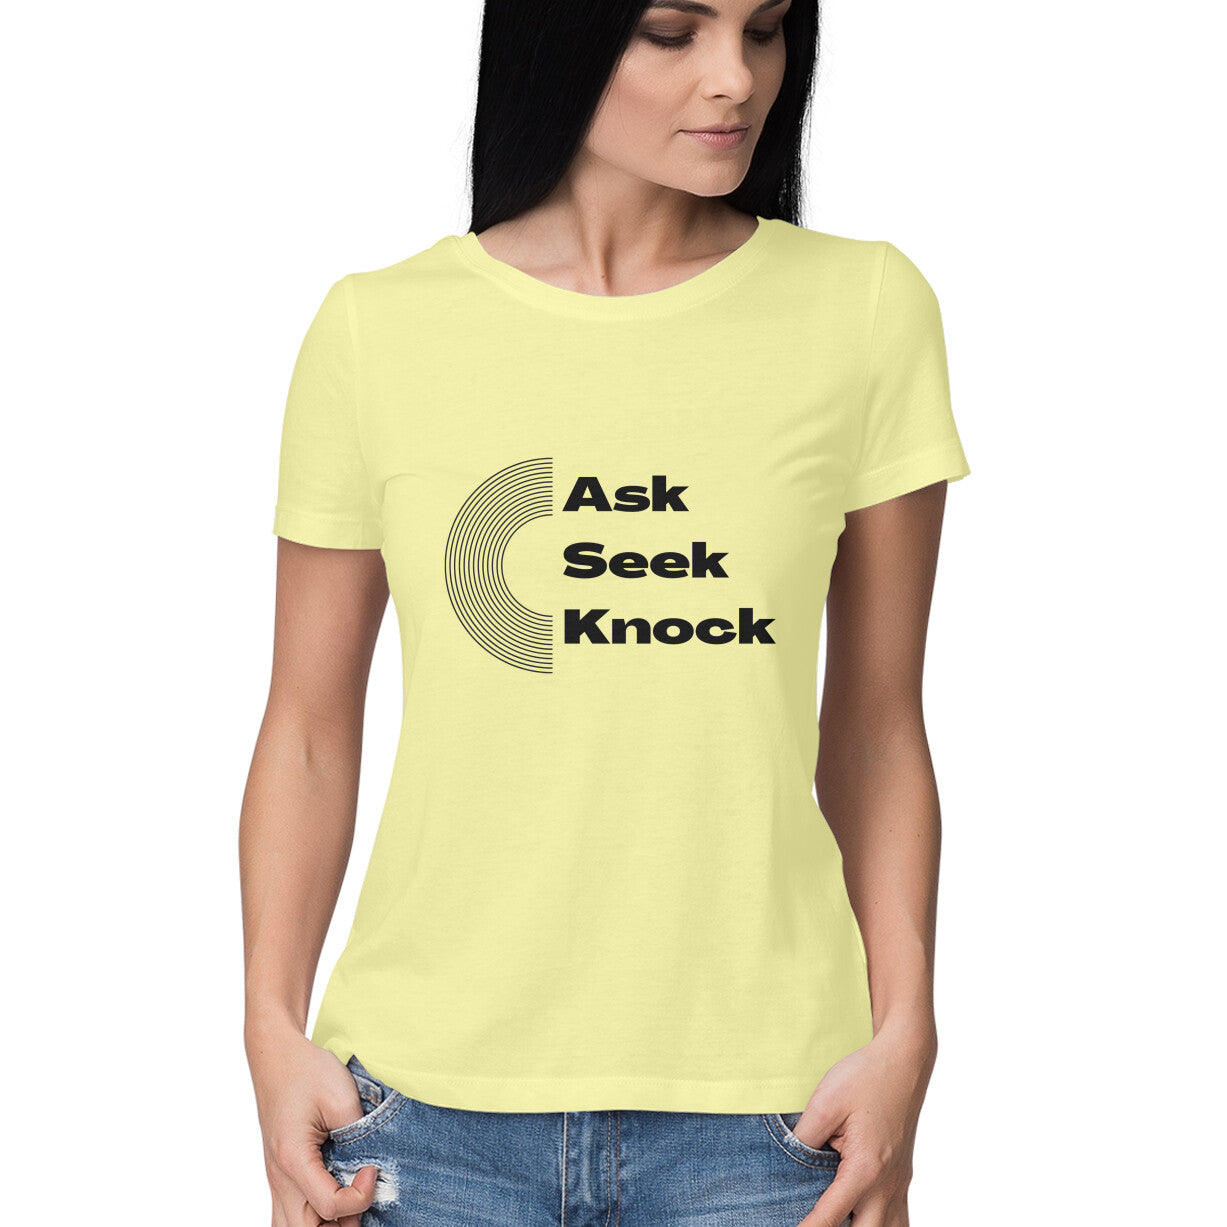 Ask, Seek, Knock women's tee